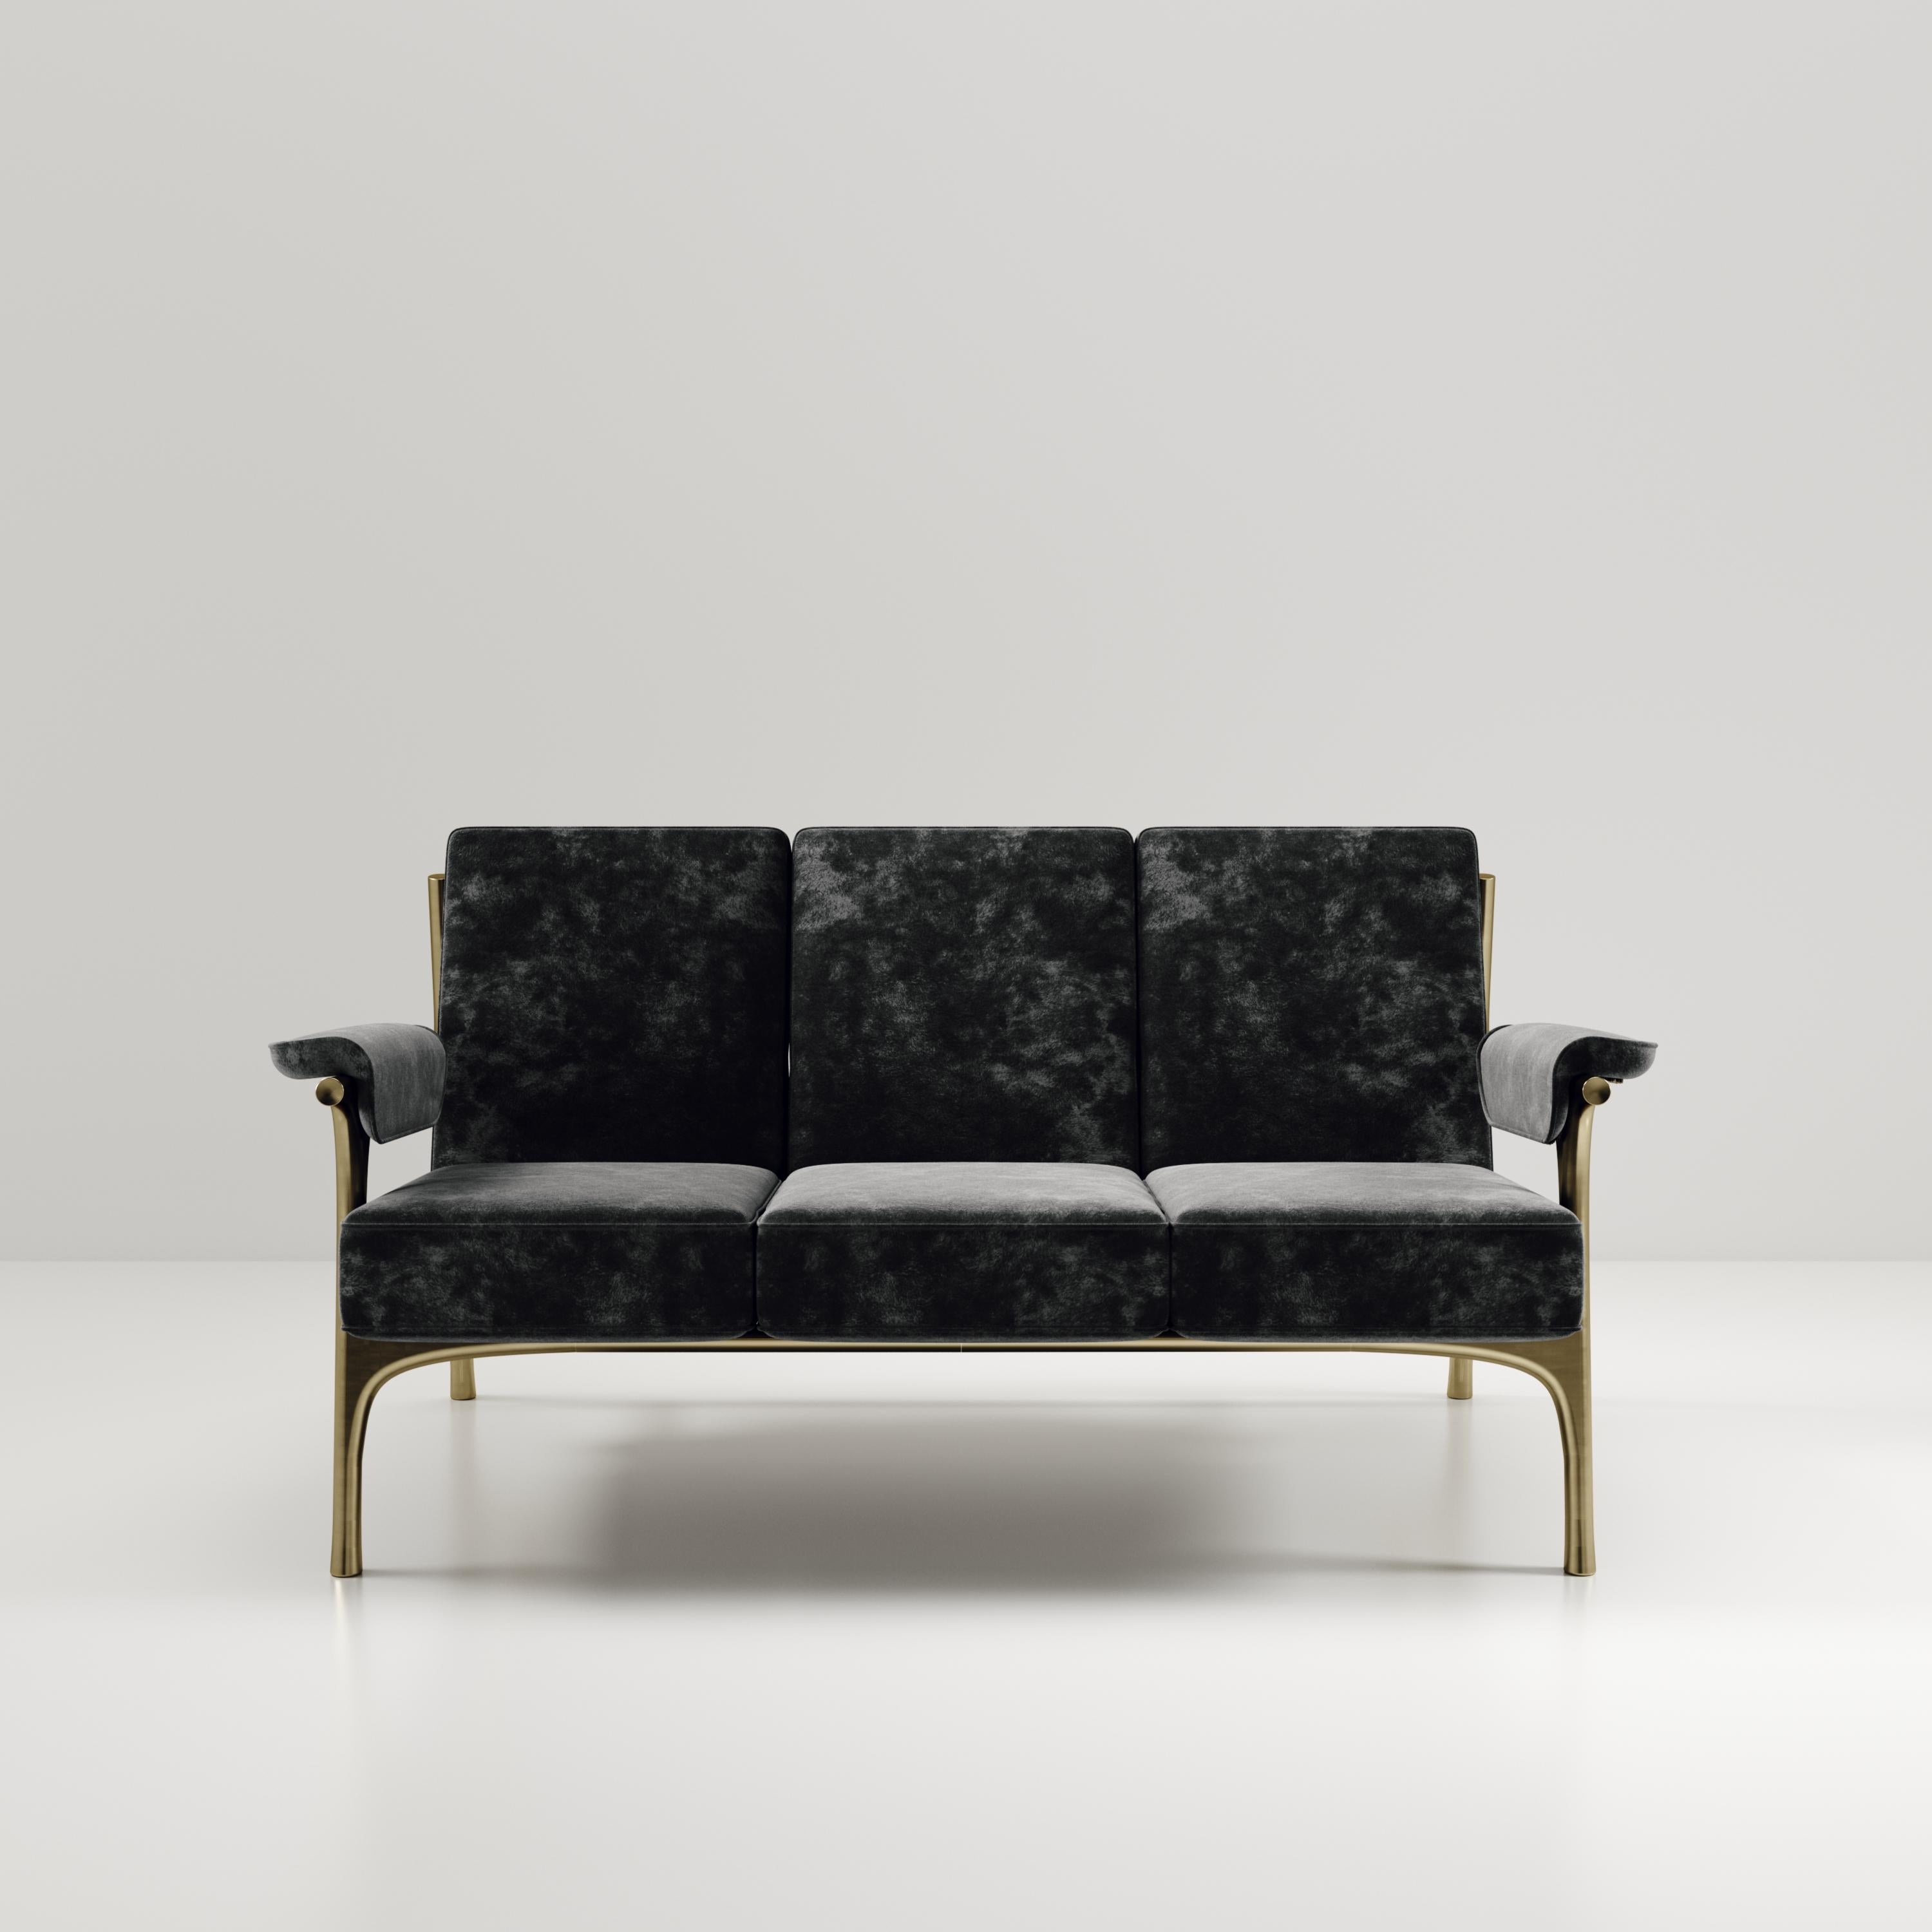 Das Sofa Ramo von R & Y Augousti ist ein elegantes und vielseitiges Möbelstück. Die Polstermöbel bieten Komfort und bewahren mit dem Gestell und den Details aus Messing in Bronze-Patina eine einzigartige Ästhetik. Dieses Angebot ist für schwarzen